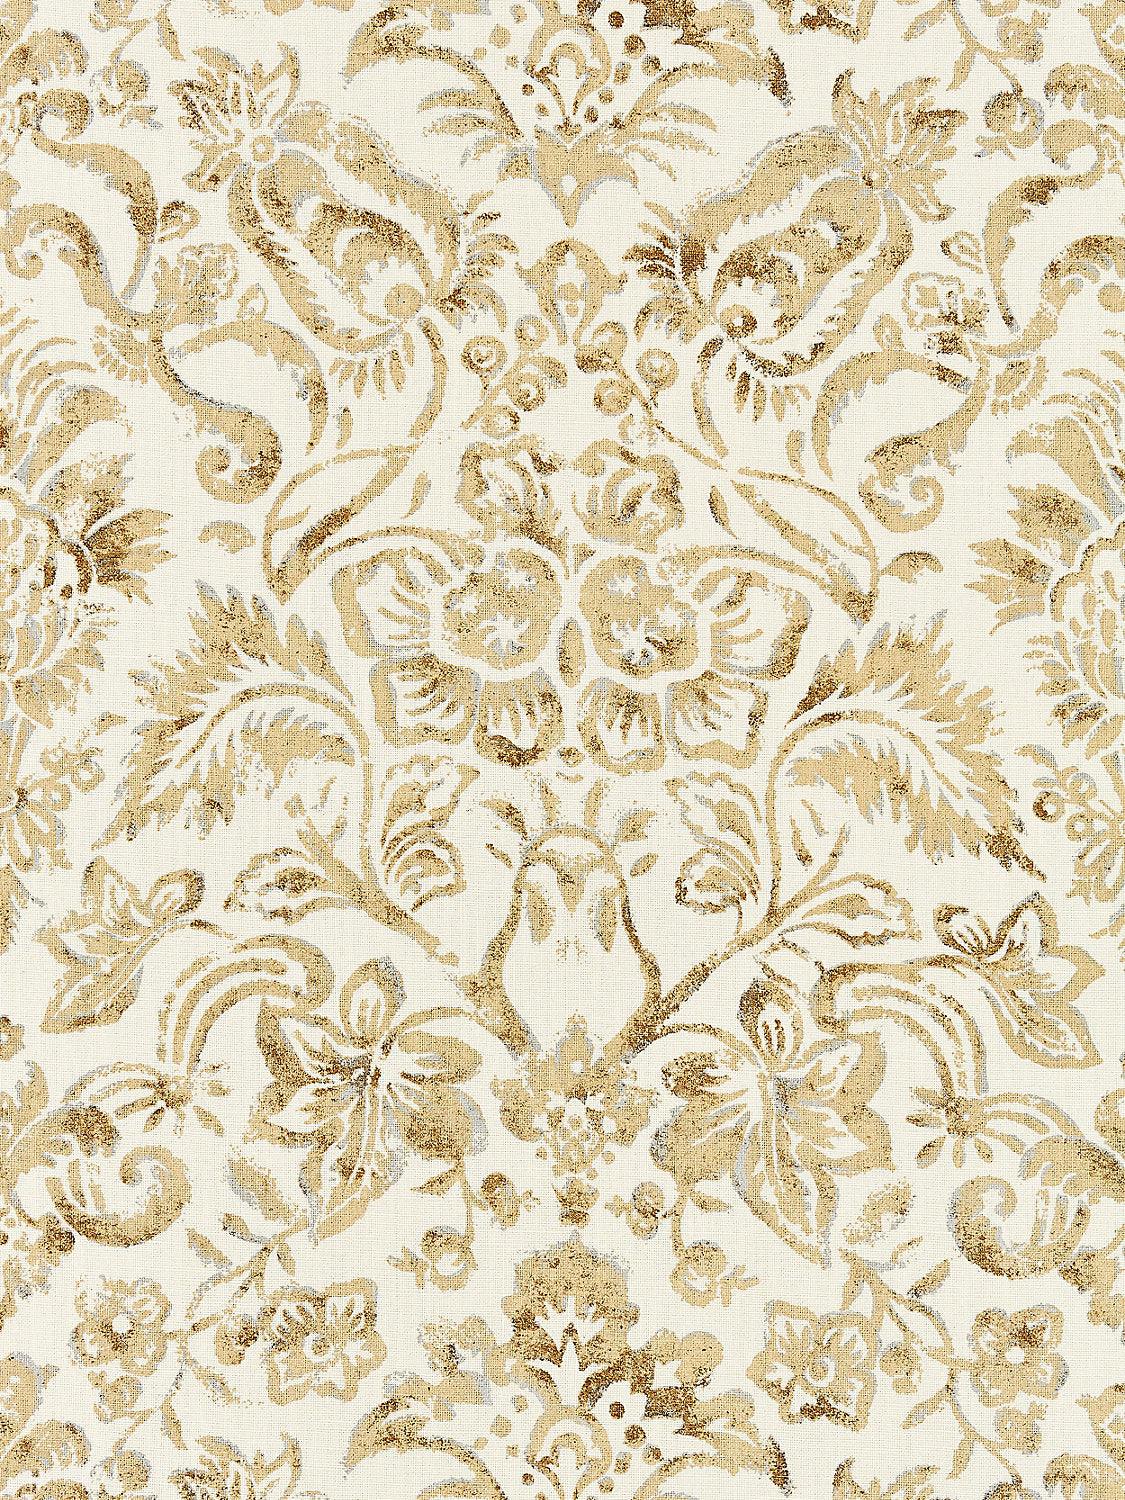 MANSFIELD DAMASK PRINT IVORY & BURNISHED GOLD - Atlanta Fabrics